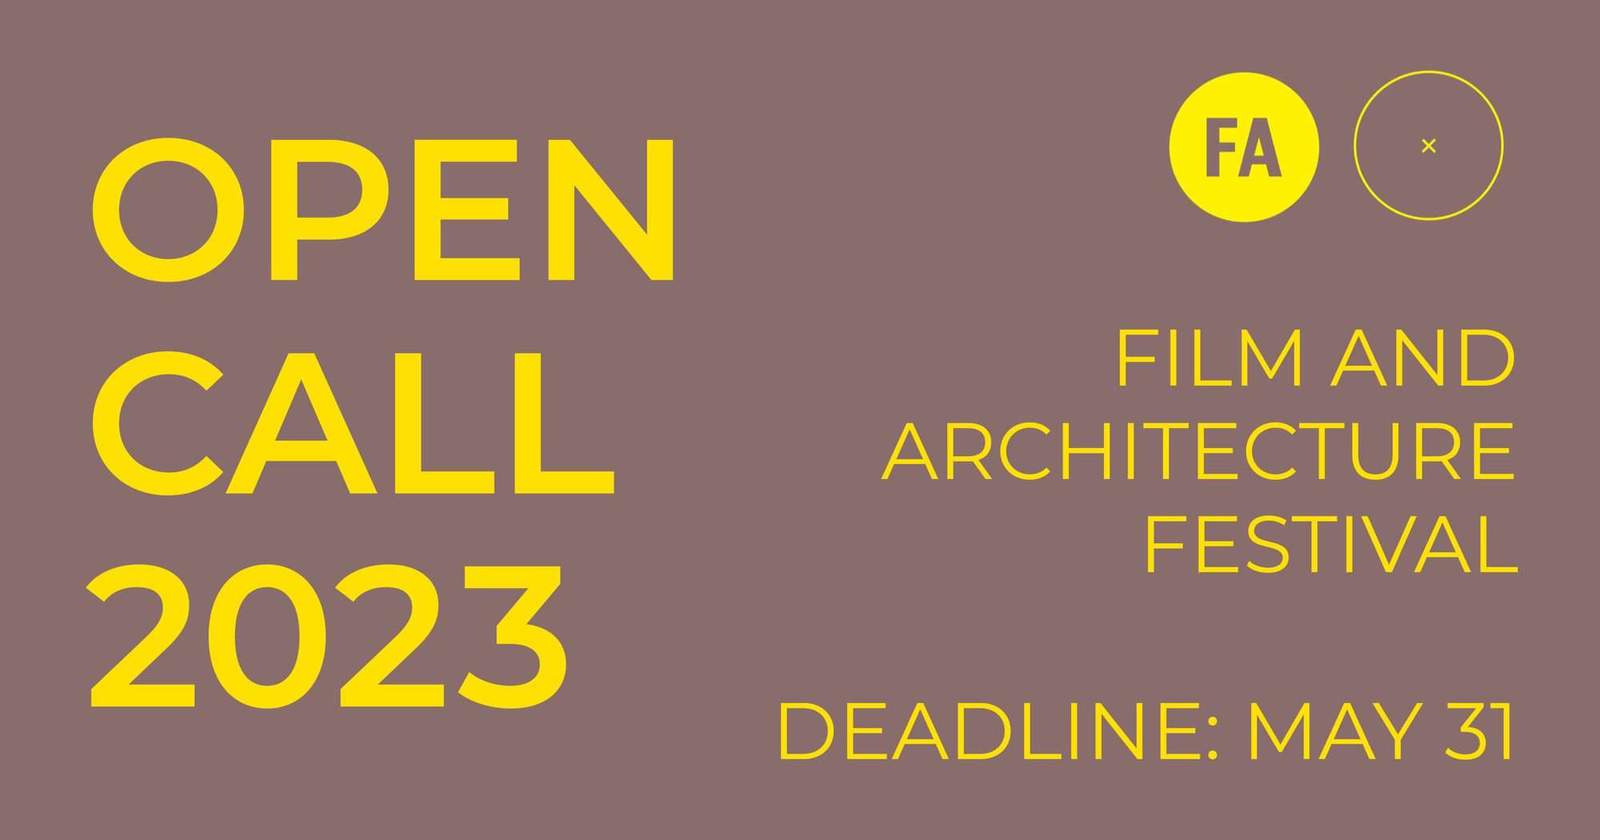 دعوة مفتوحة: مهرجان السينما والعمارة